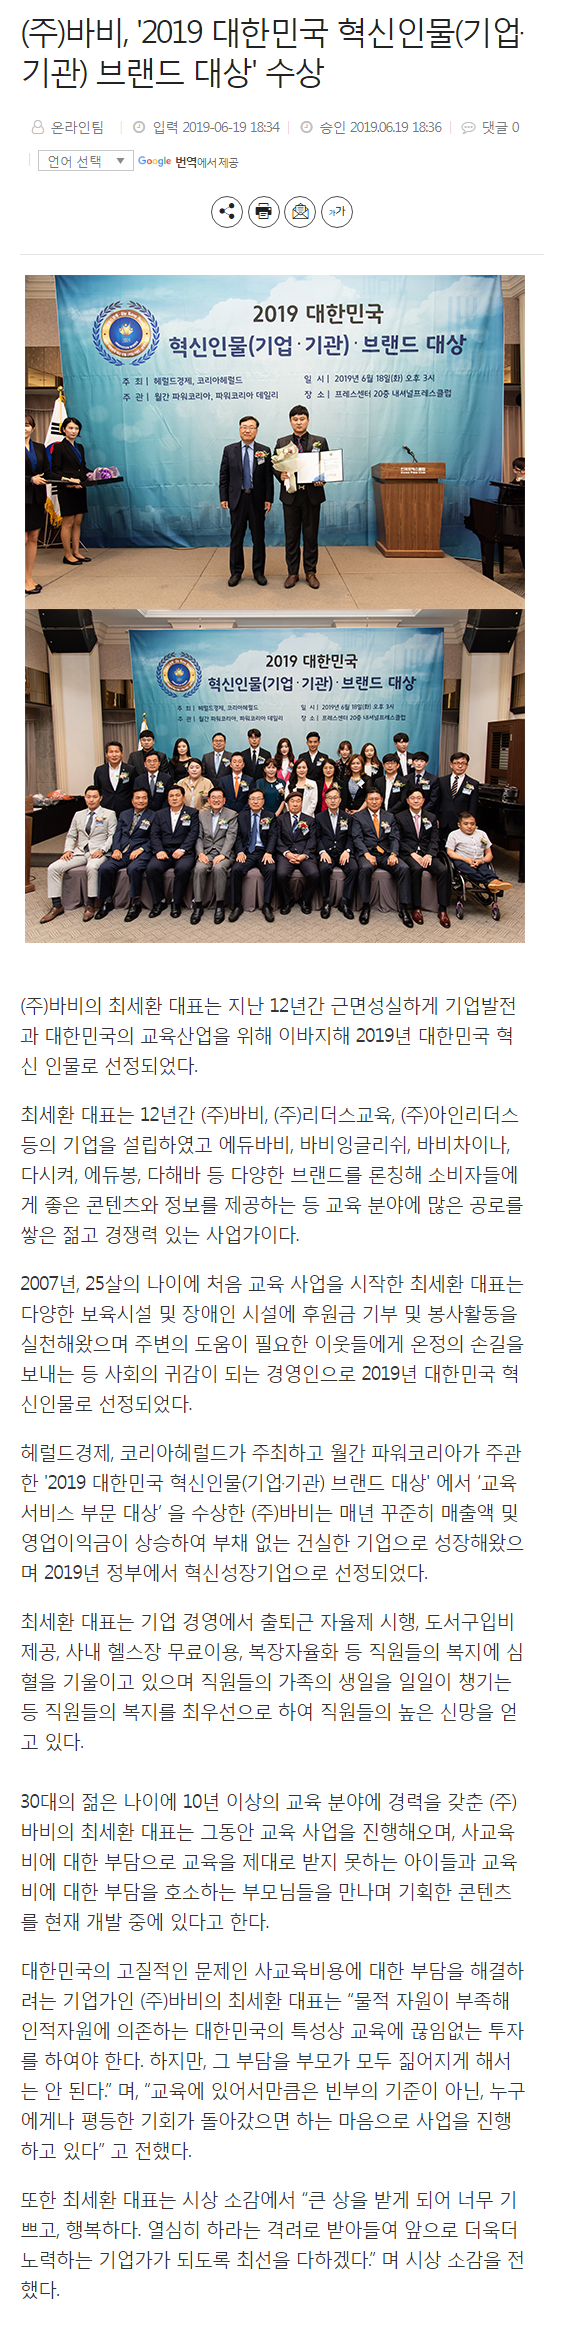 바비잉글리쉬_뉴스기사_2019대한민국혁신인물(기업)브랜드대상수상.png